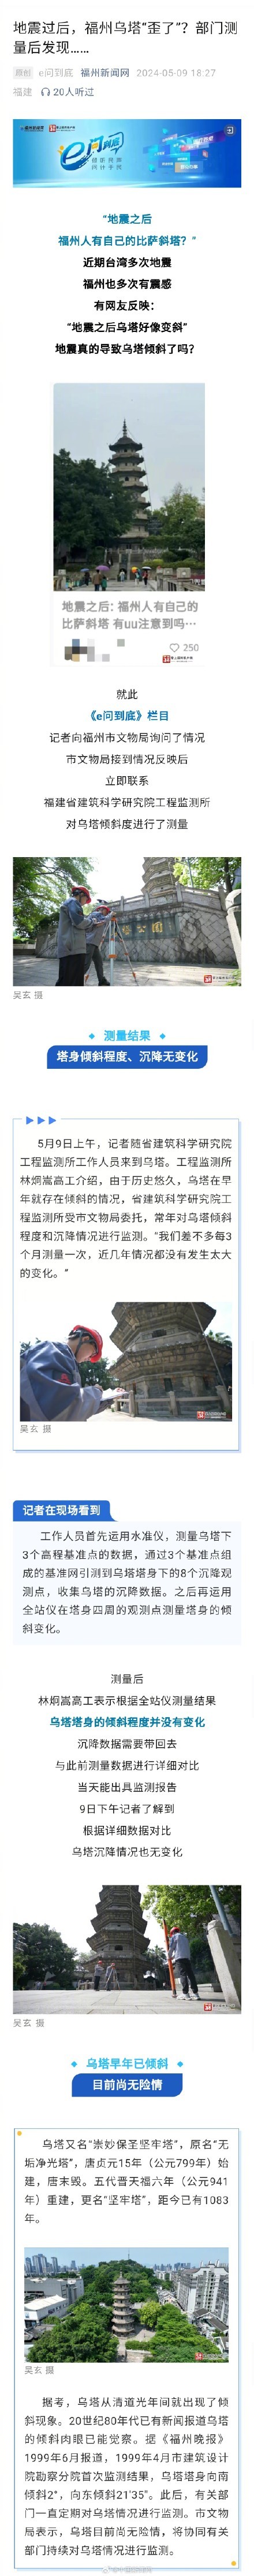 台湾地震把福州乌塔震歪了?谣言